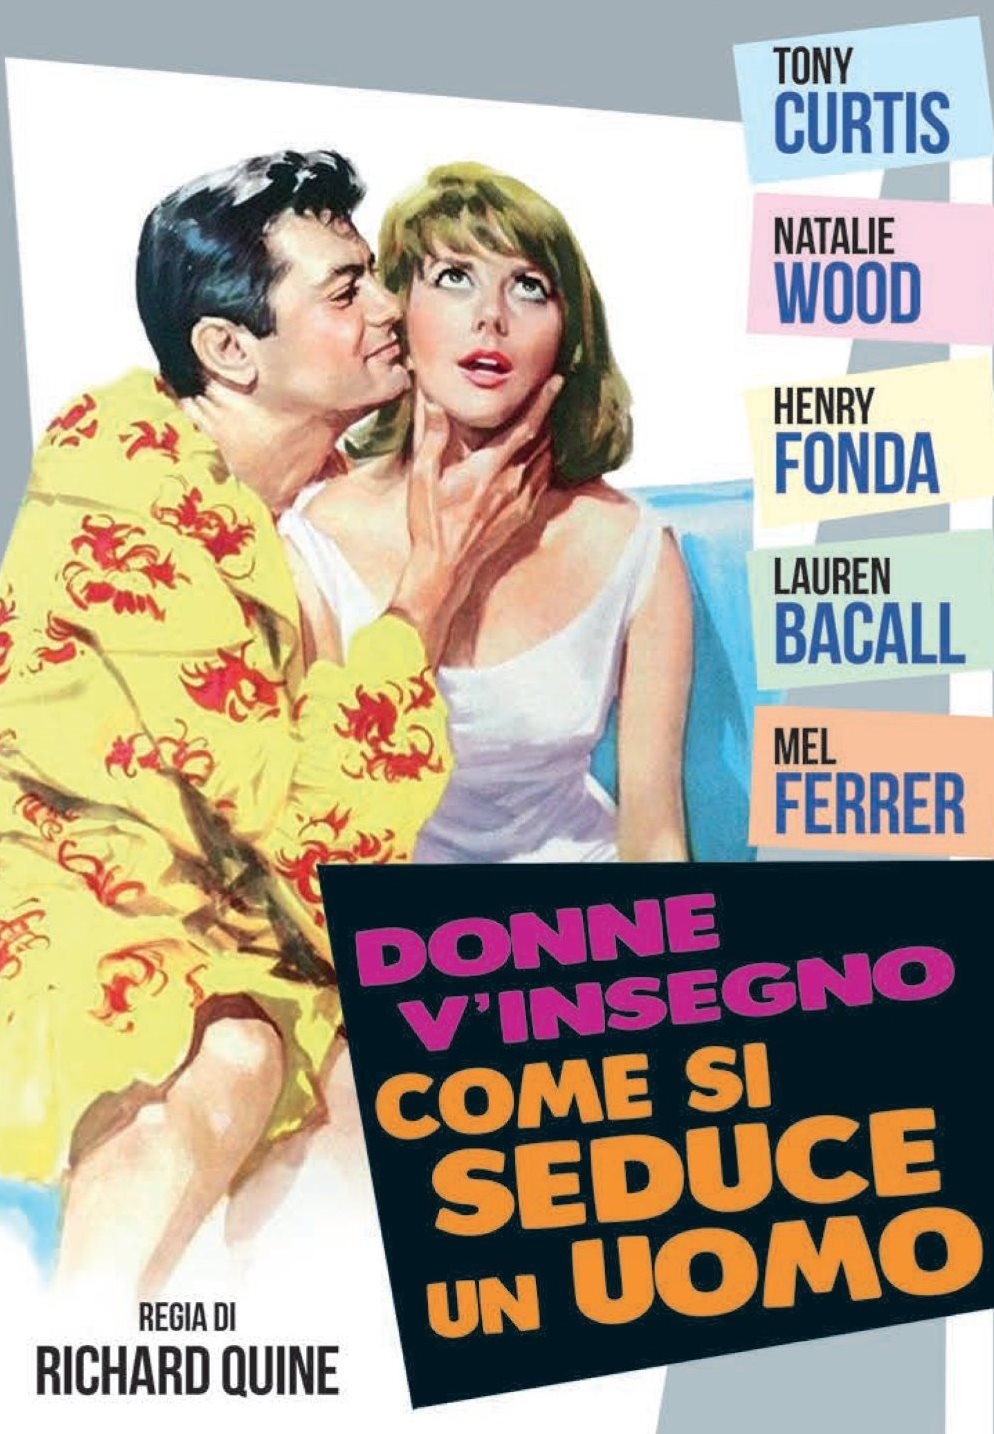 Donne, v’insegno come si seduce un uomo [HD] (1964)